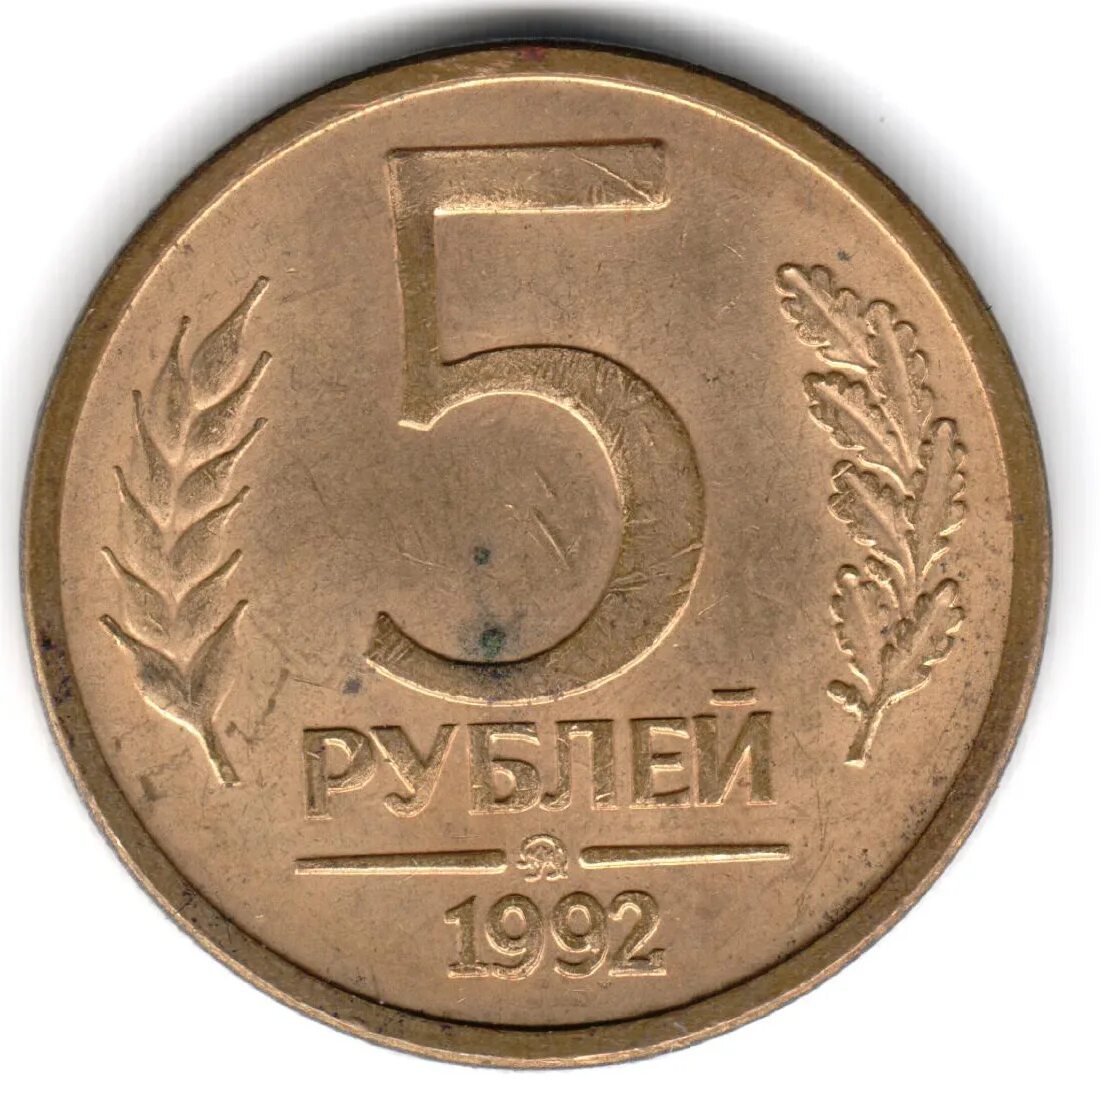 Вывести 5 рублей. 5 Рублей 1992 года. Монета 5 рублей 1992. Монеты СССР 1992. 5 Руб 1992 года.